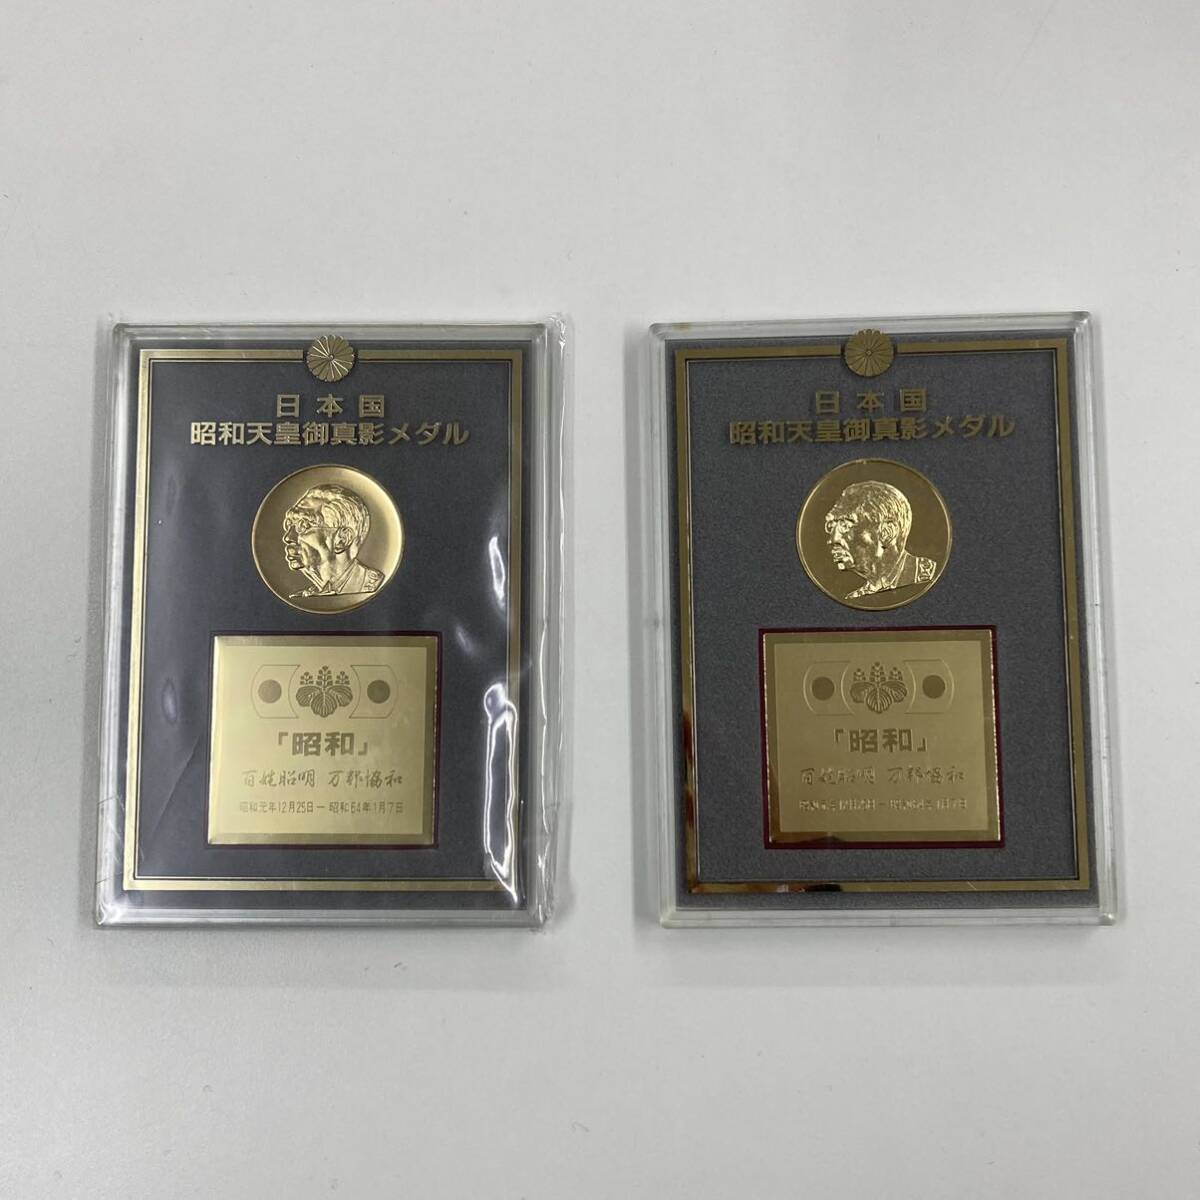 【A6D158】日本国 昭和天皇御真影メダル 第124第昭和天皇 1901-1989年 通常保管品 記念メダル の画像1